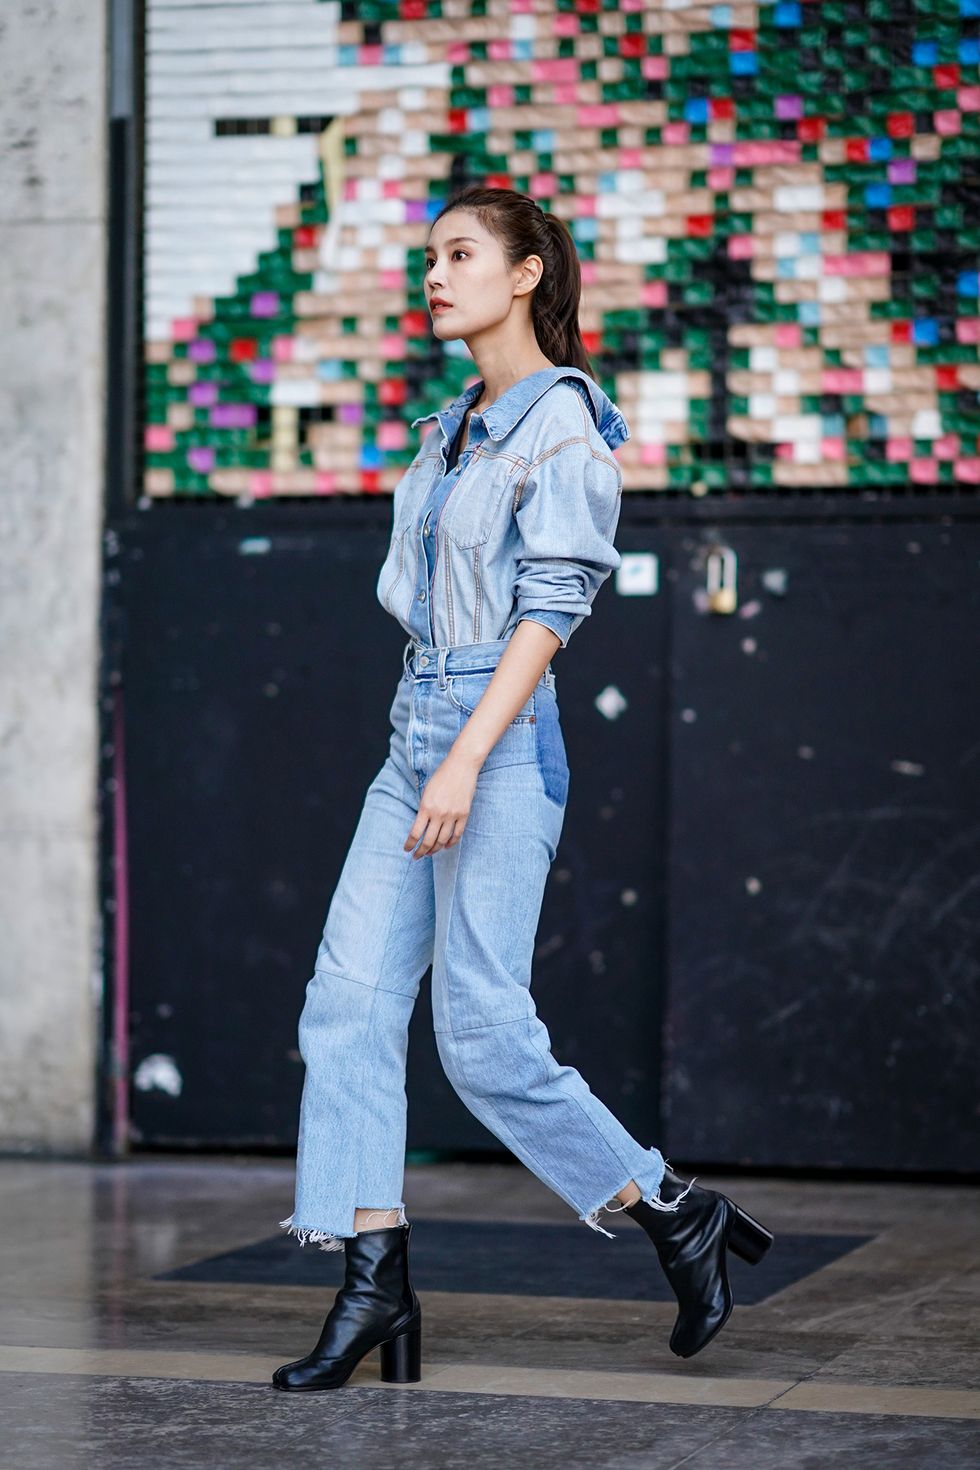 La camicia di jeans come va indossata per essere alla moda? Guarda le immagini degli outfit di tendenza per l'estate 2018 e scopri i look più glam da copiare ora. 